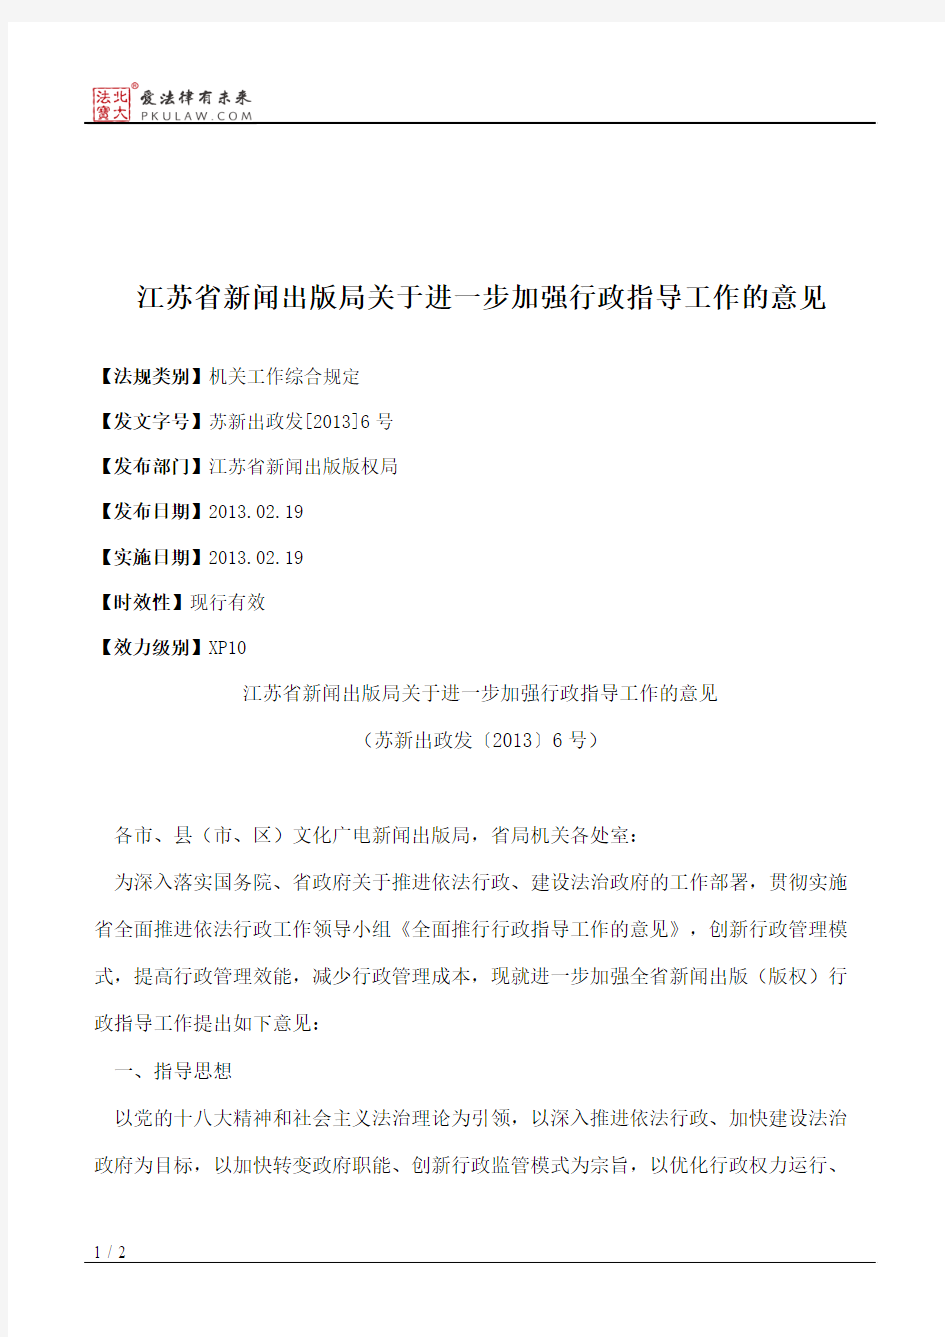 江苏省新闻出版局关于进一步加强行政指导工作的意见